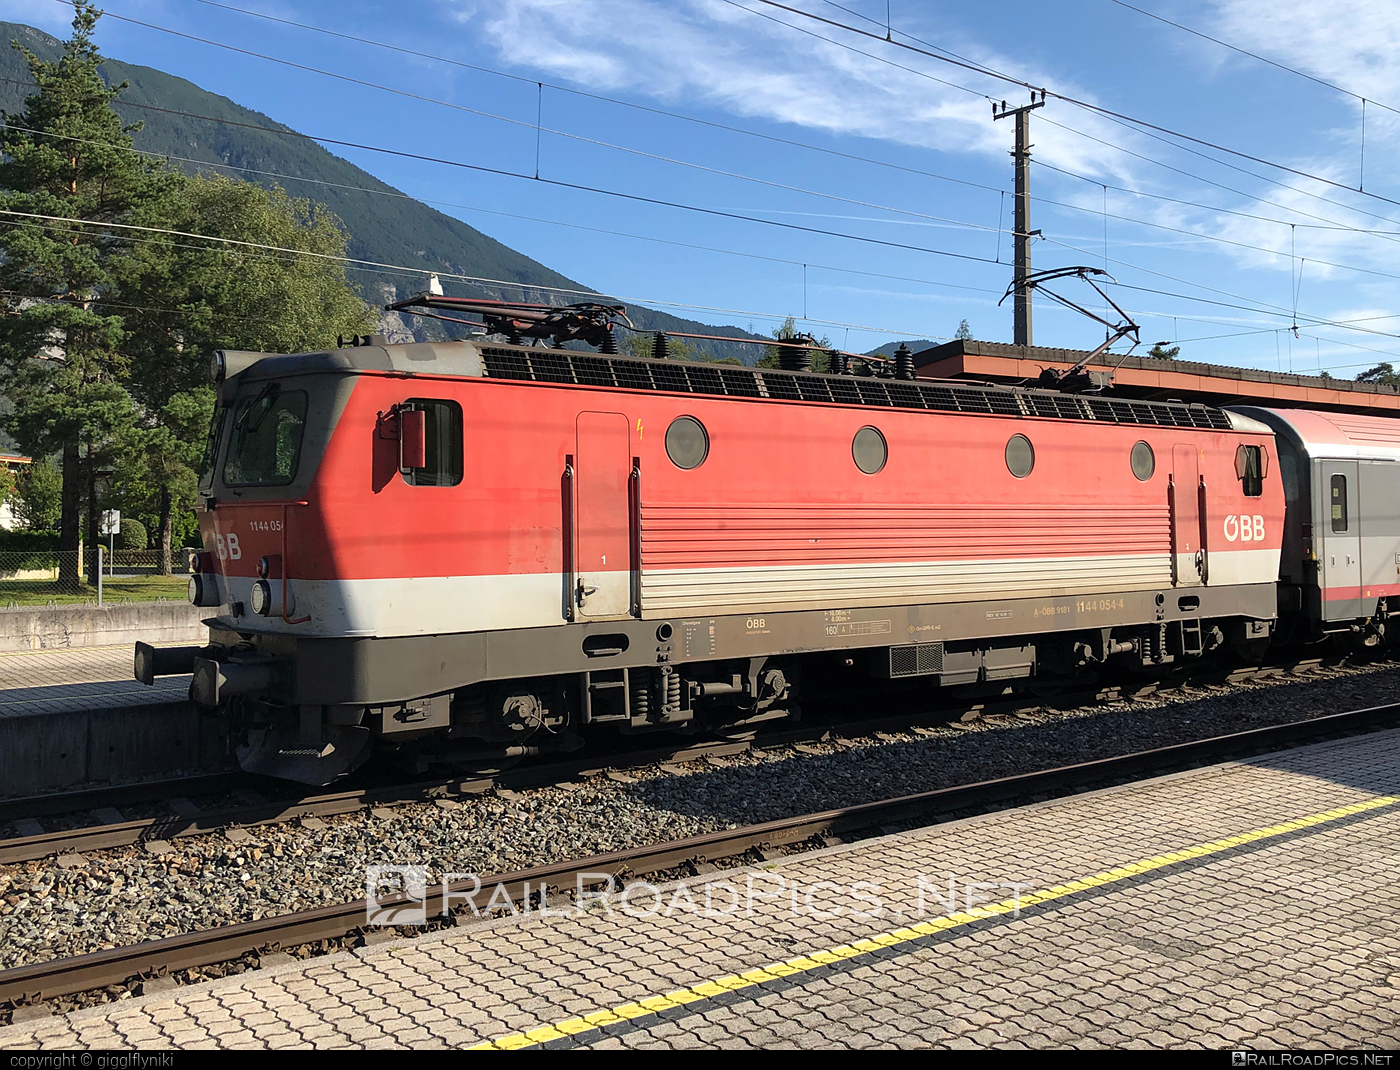 SGP 1144 - 1144 054 operated by Österreichische Bundesbahnen #obb #obb1144 #obbClass1144 #osterreichischebundesbahnen #sgp #sgp1144 #simmeringgrazpauker